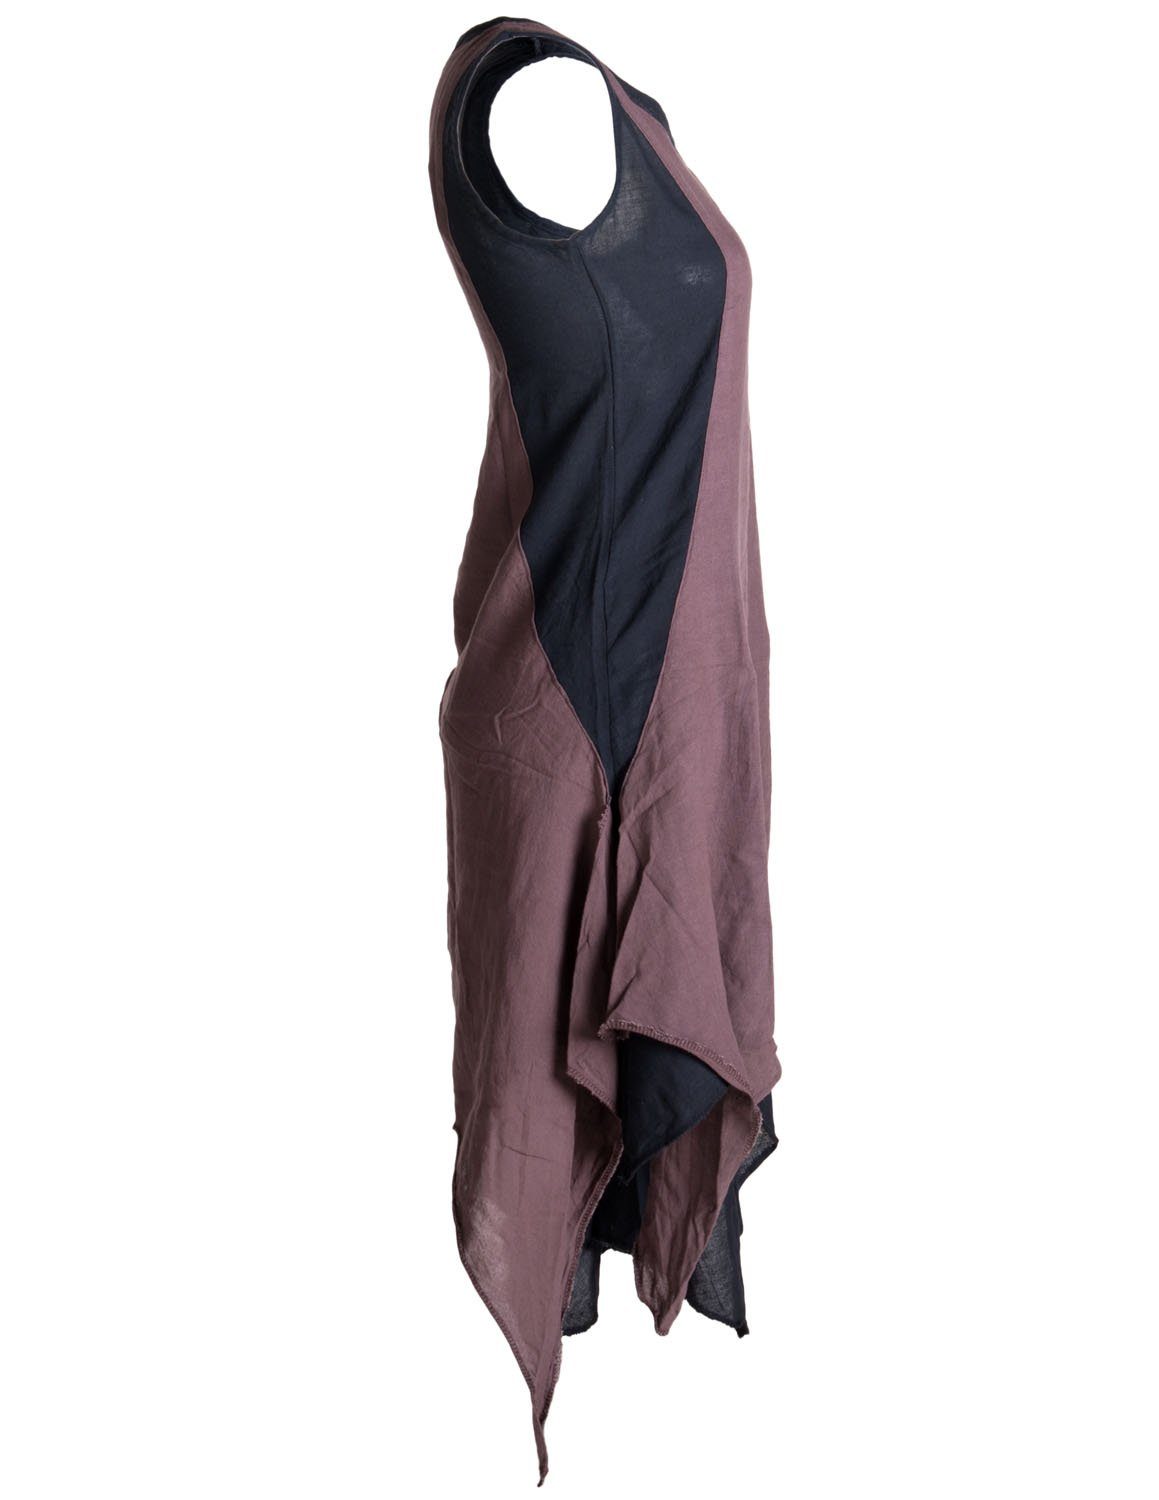 Vishes Sommerkleid Ärmelloses Lagenlook Kleid Baumwolle Boho, Style Goa, schwarz-braun Hippie handgewebte